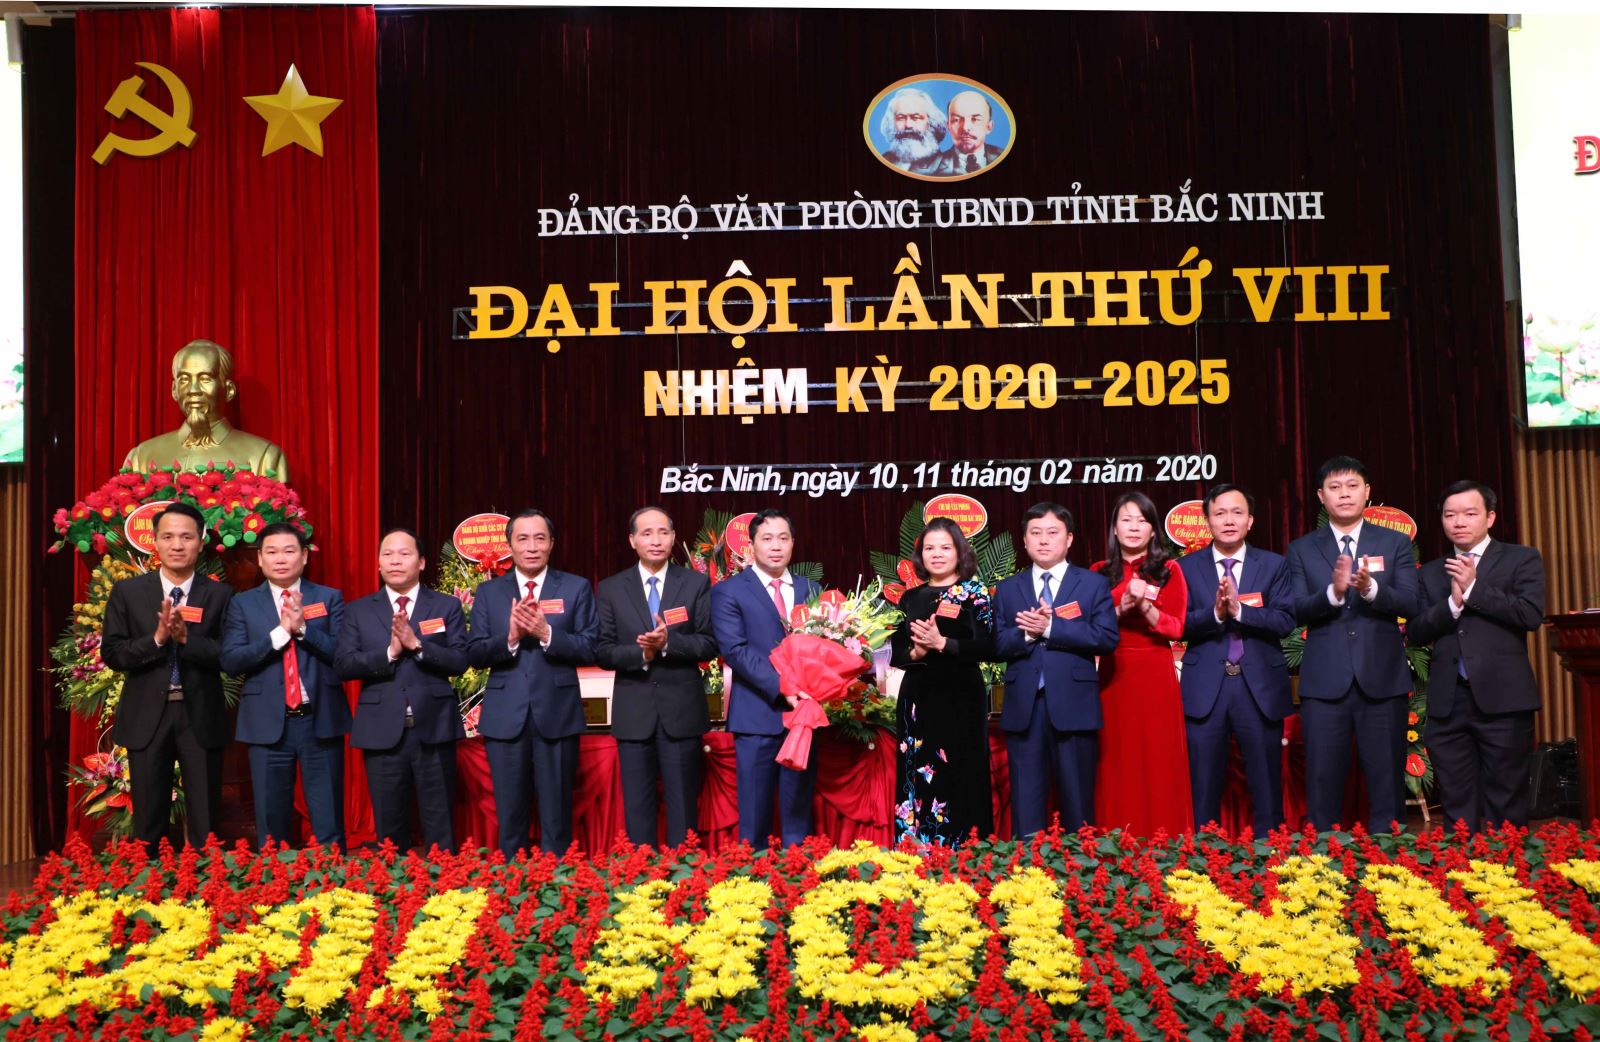 Đại hội lần thứ VIII, nhiệm kỳ 2020-2025 của Đảng bộ Văn phòng UBND tỉnh Bắc Ninh, tháng 2/2020. Ảnh: baotintuc.vn.